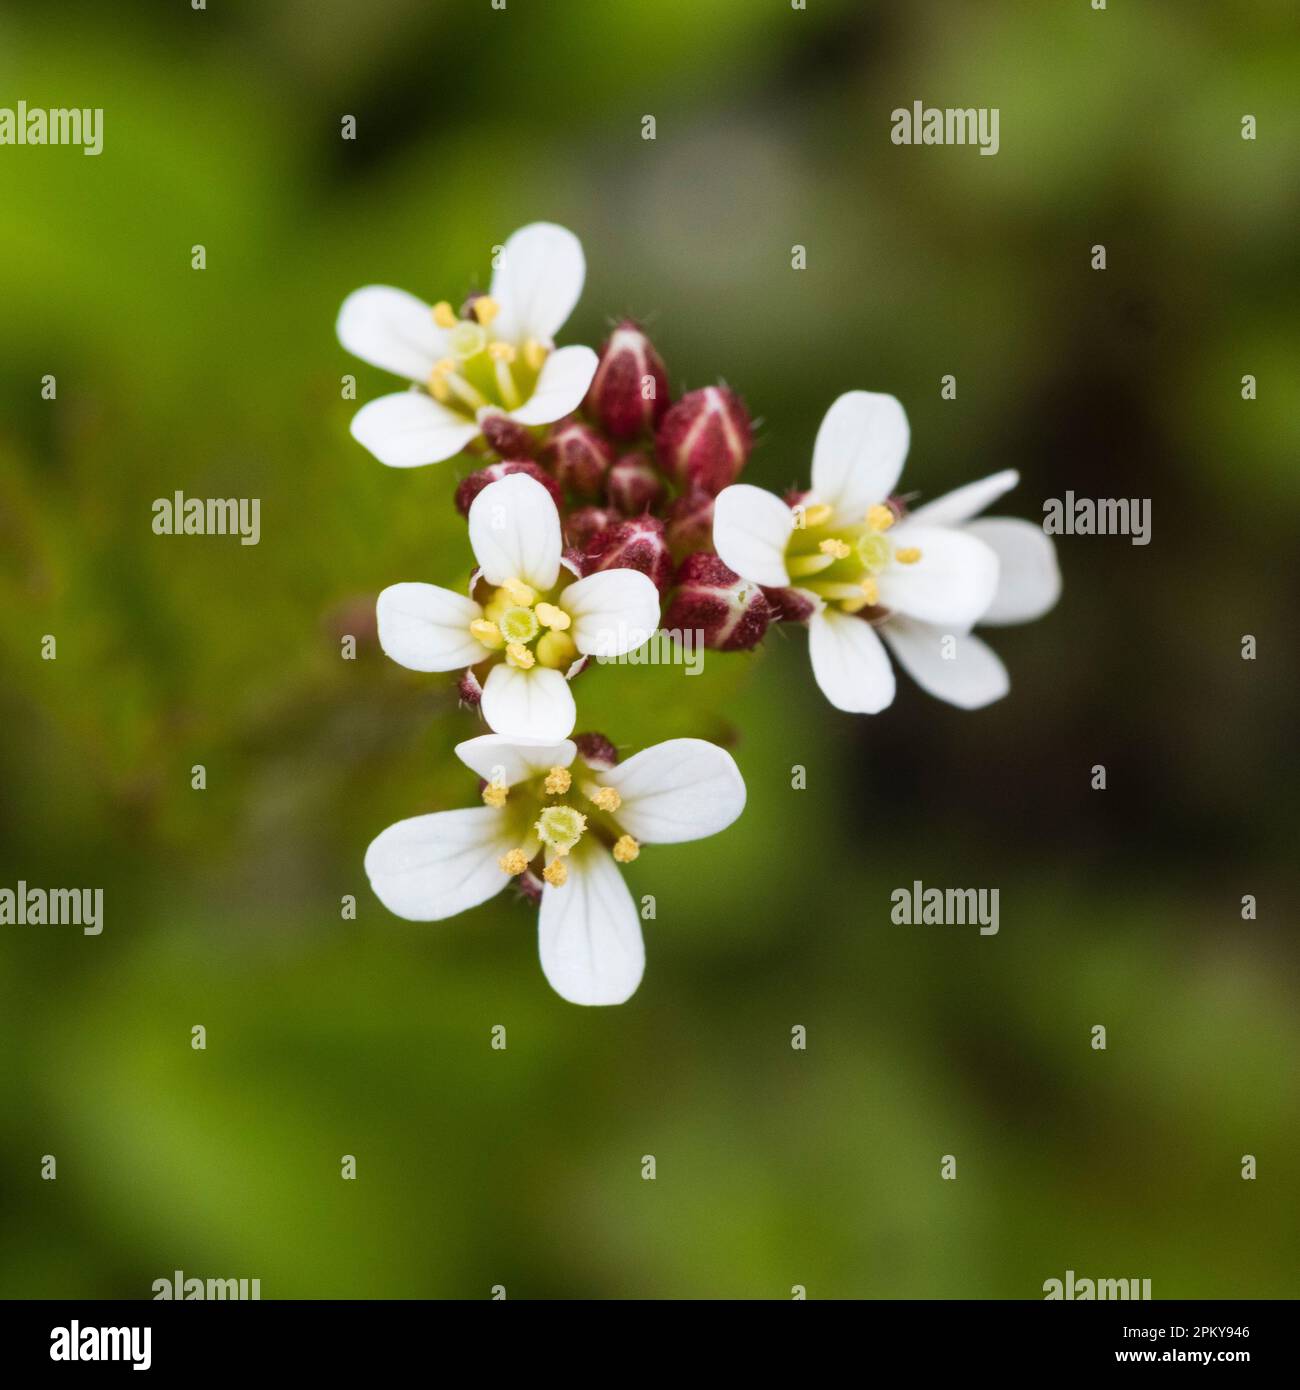 Gros plan sur les petites fleurs blanches de la fleur sauvage annuelle du Royaume-Uni et de l'herbe de jardin, Cardamine hirsuta, âpre cresson amère Banque D'Images